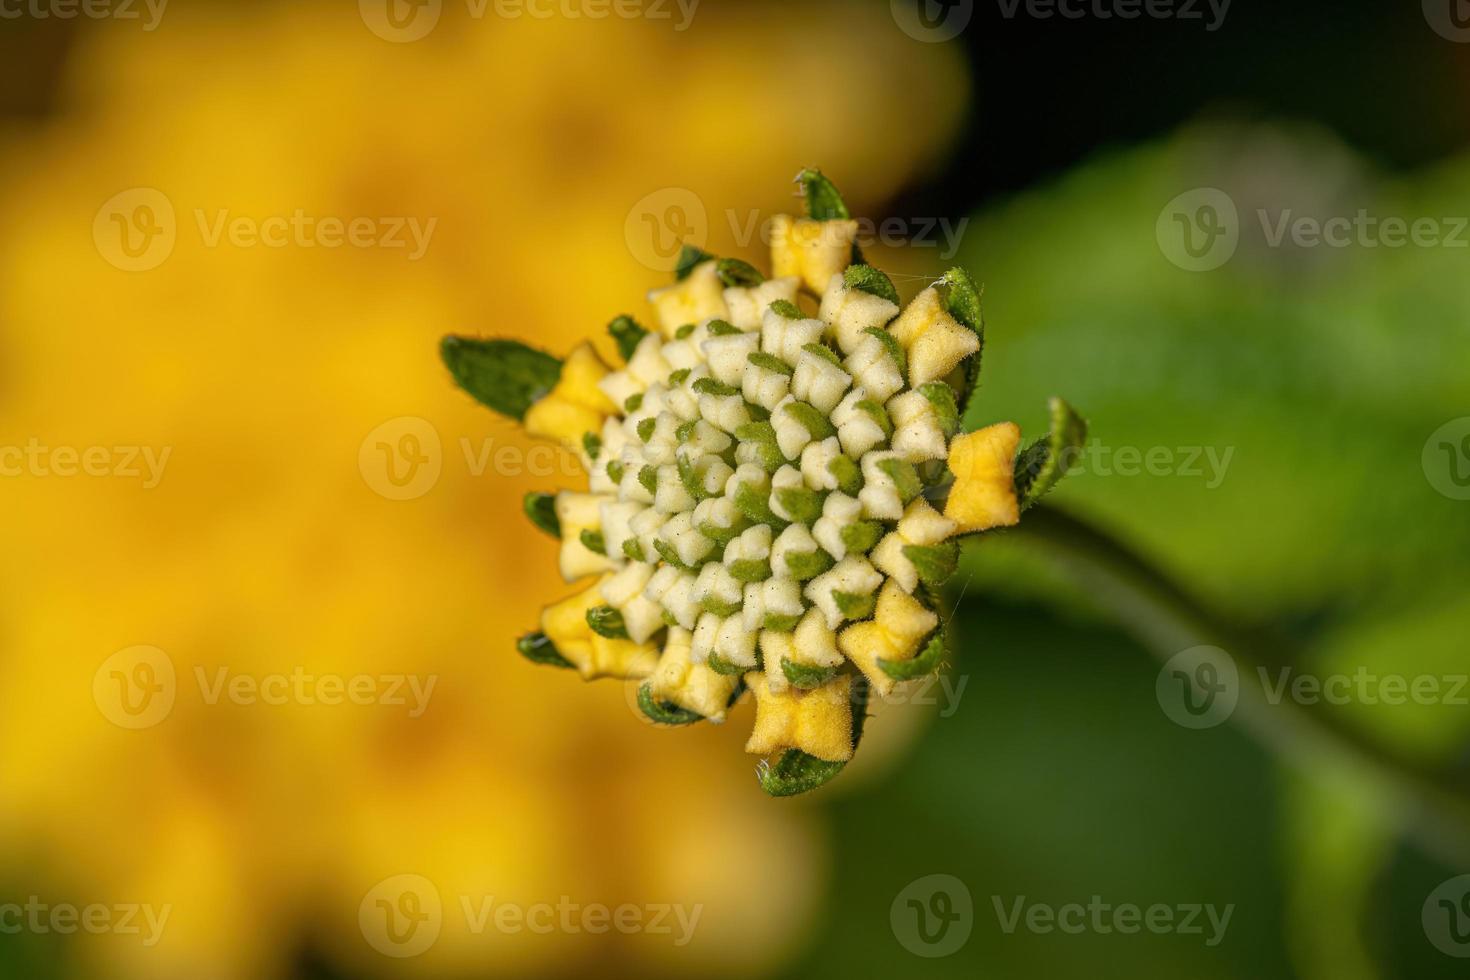 fiore di lantana comune foto